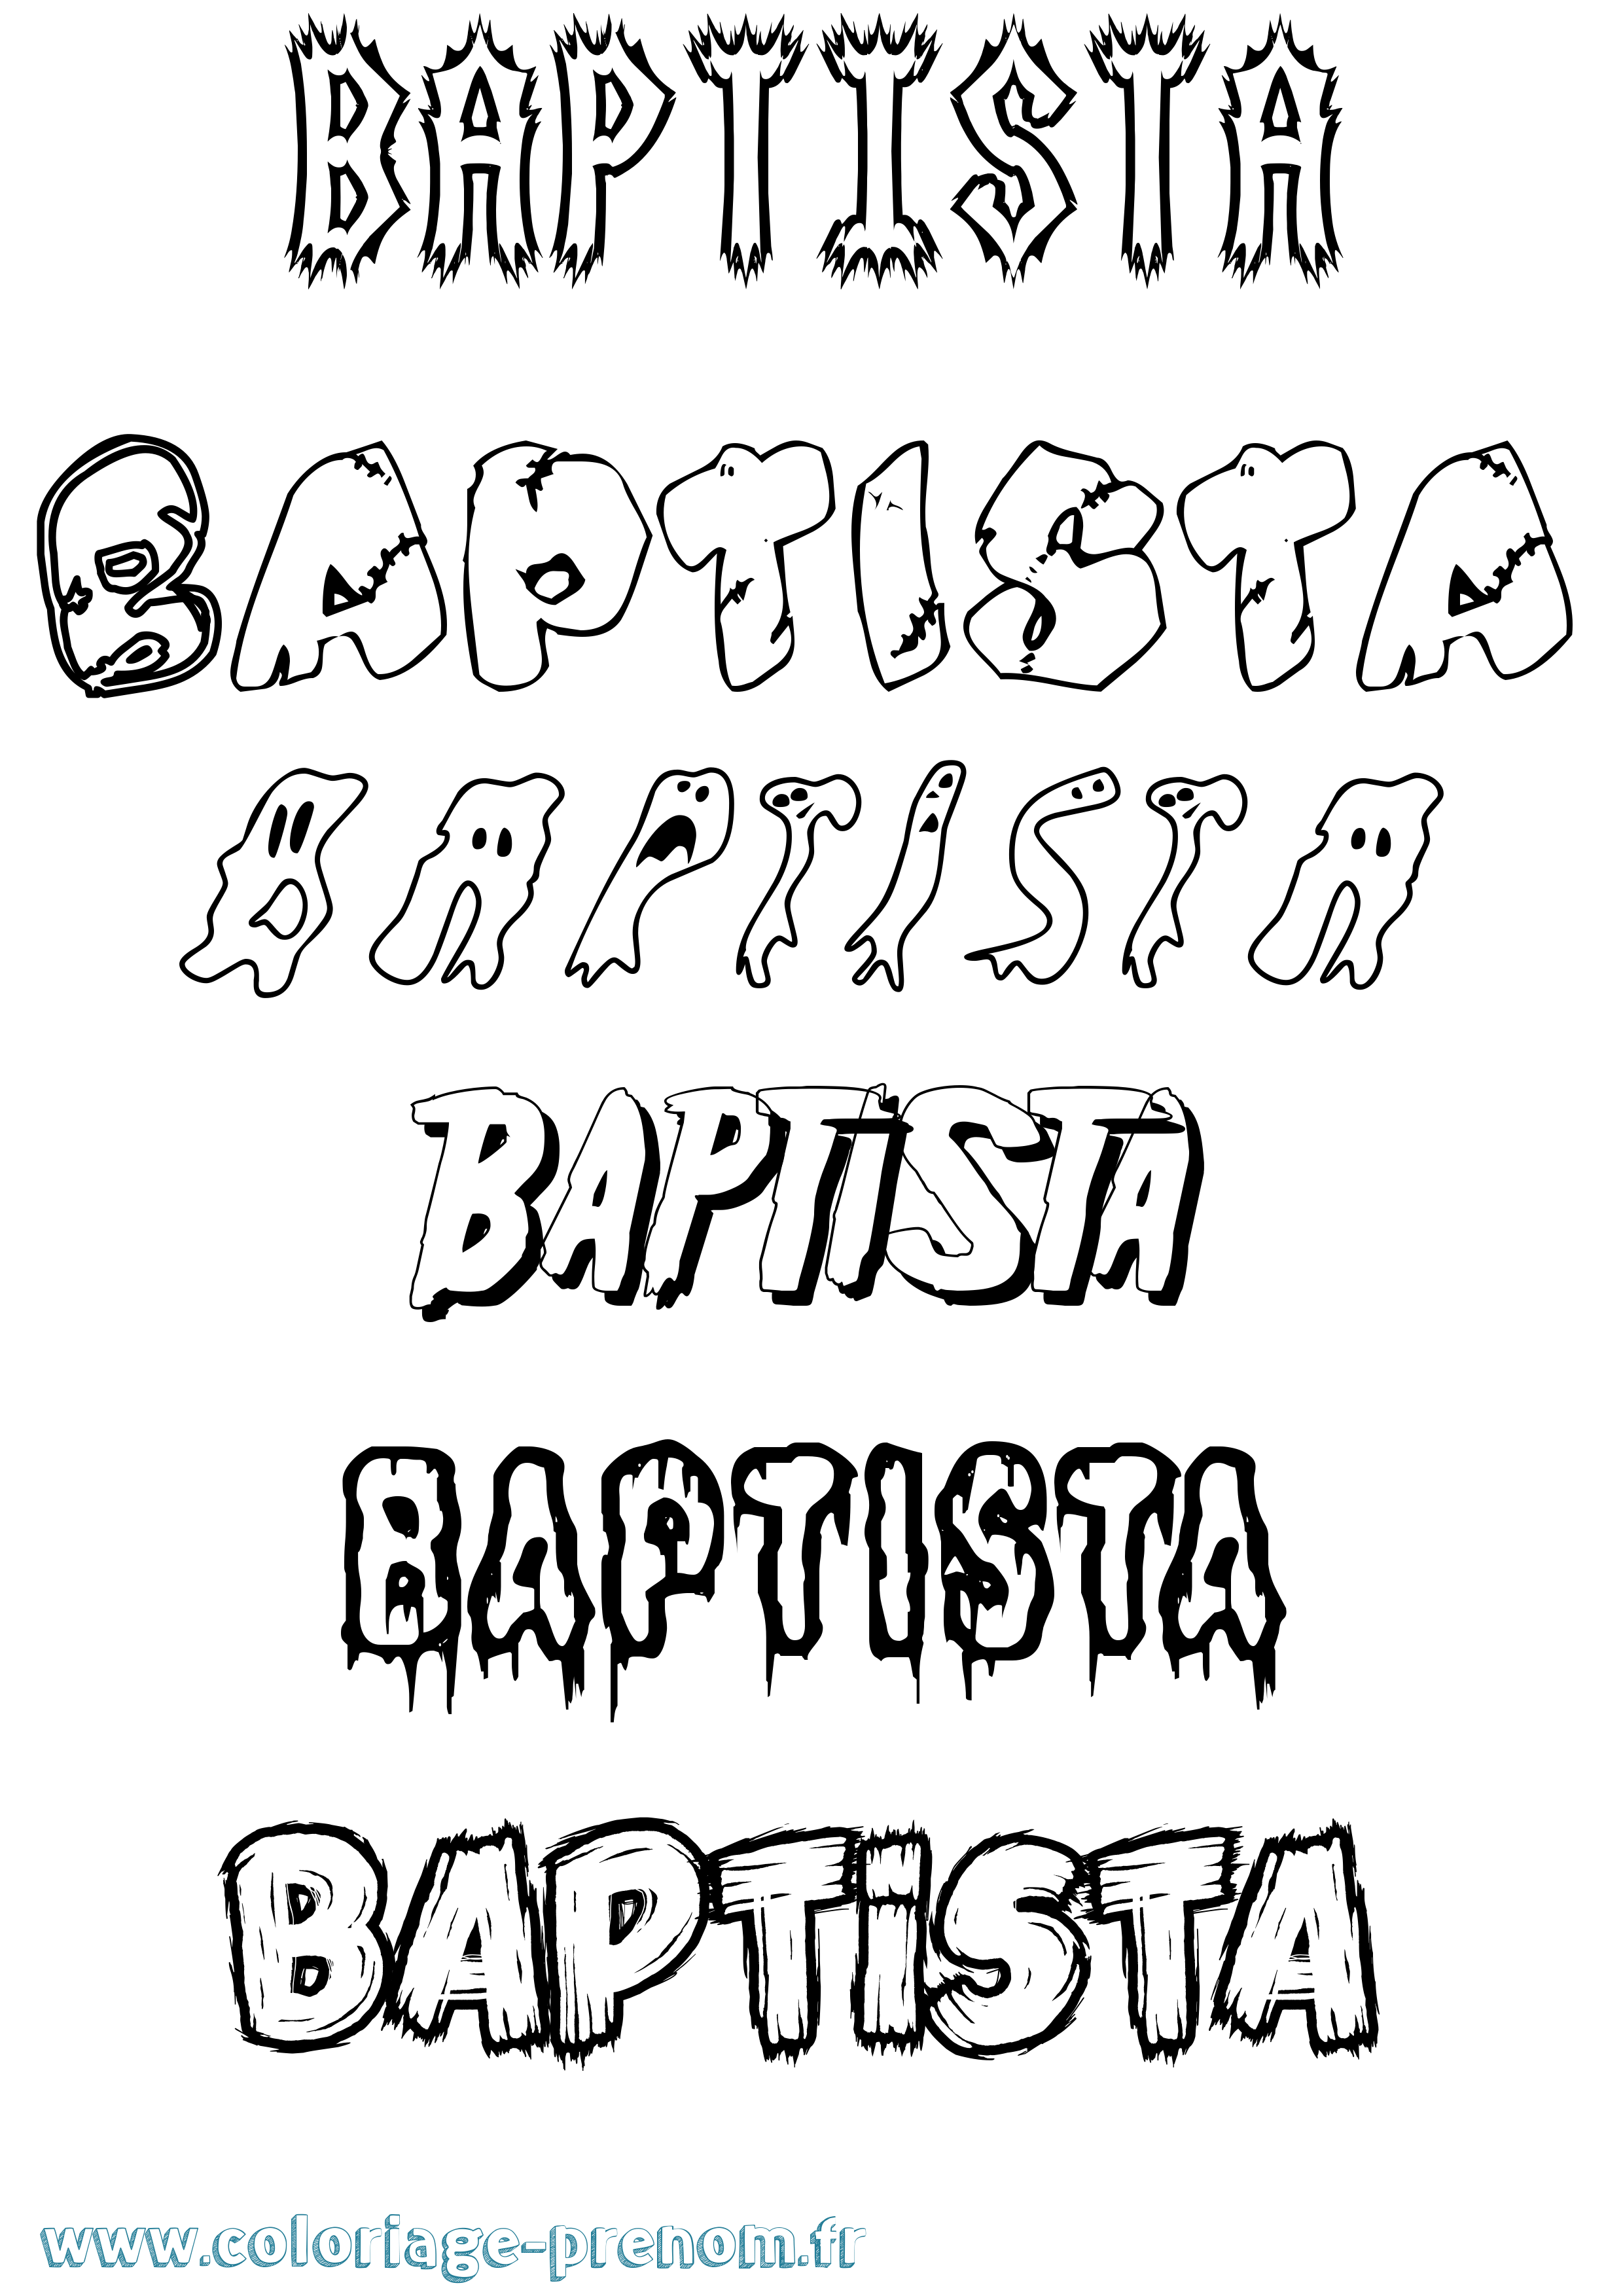 Coloriage prénom Baptista Frisson